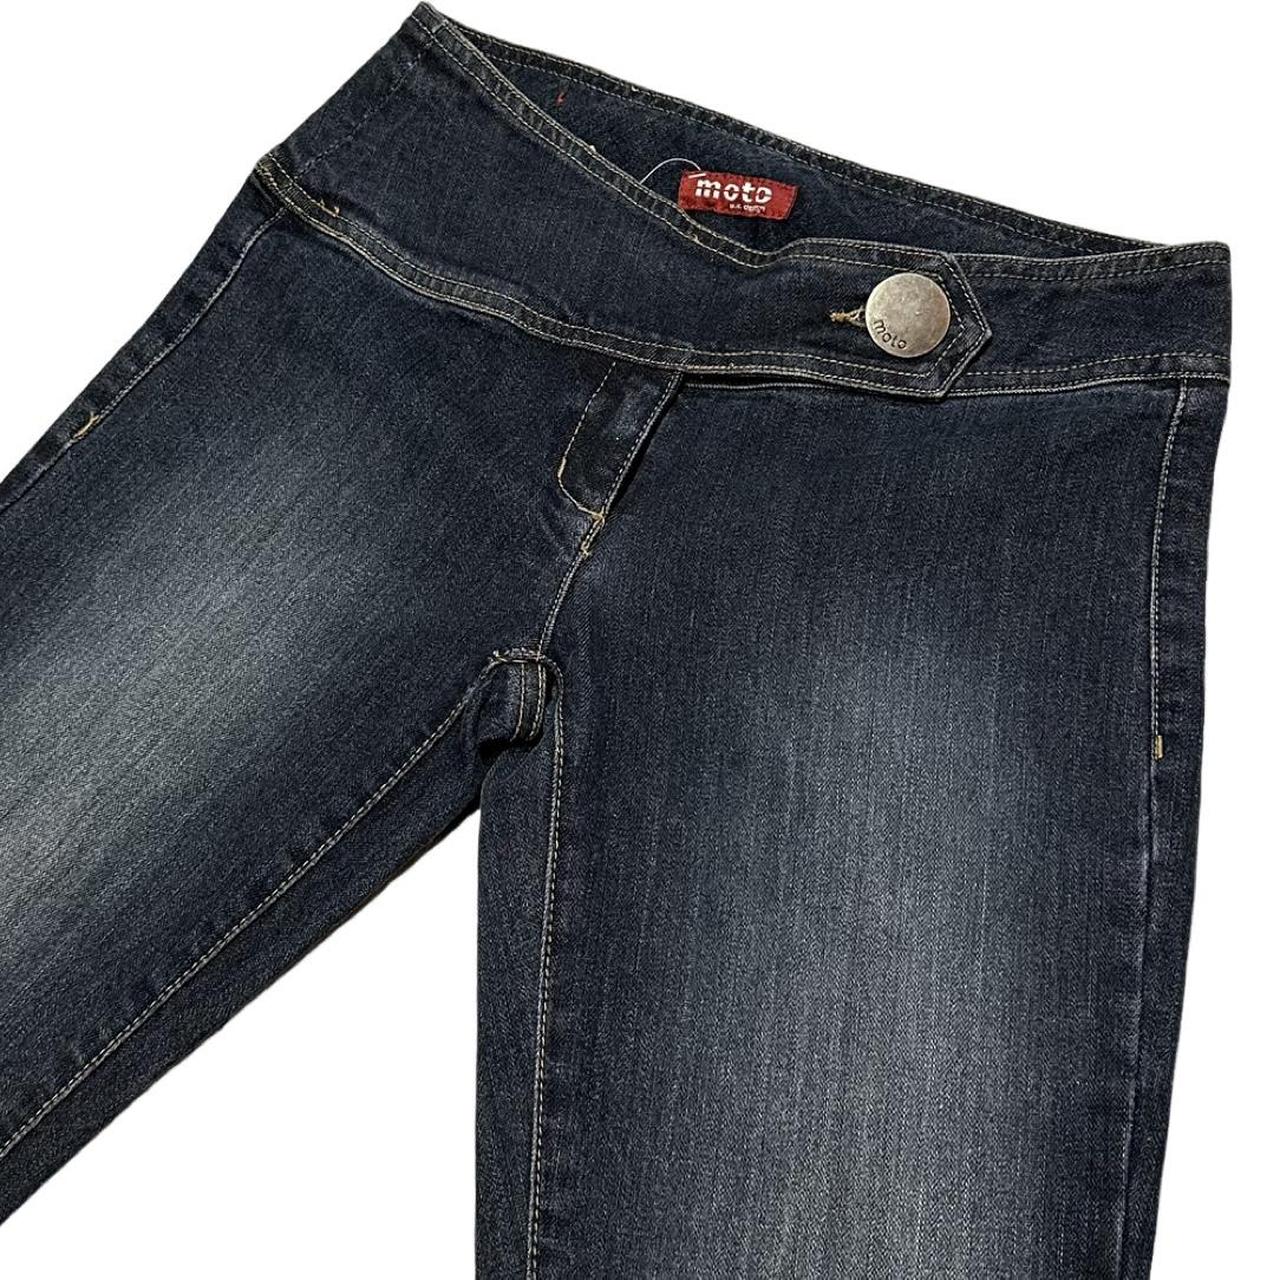 Asymmetrical Low Rise Jeans